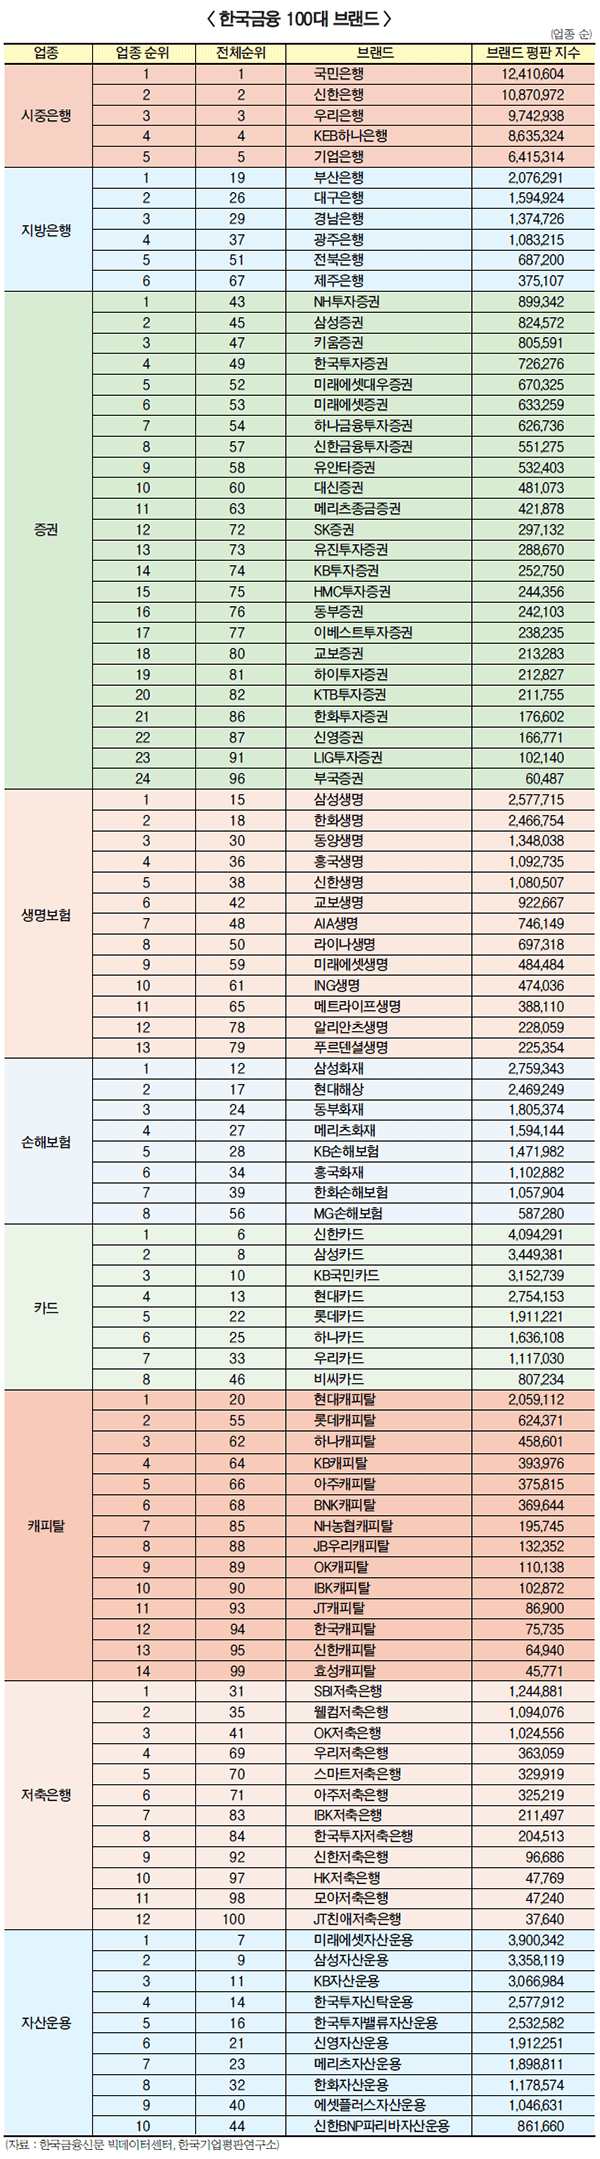 [한국금융브랜드 TOP 100 카드부문 1위] 신한카드, SNS채널 활용 상승